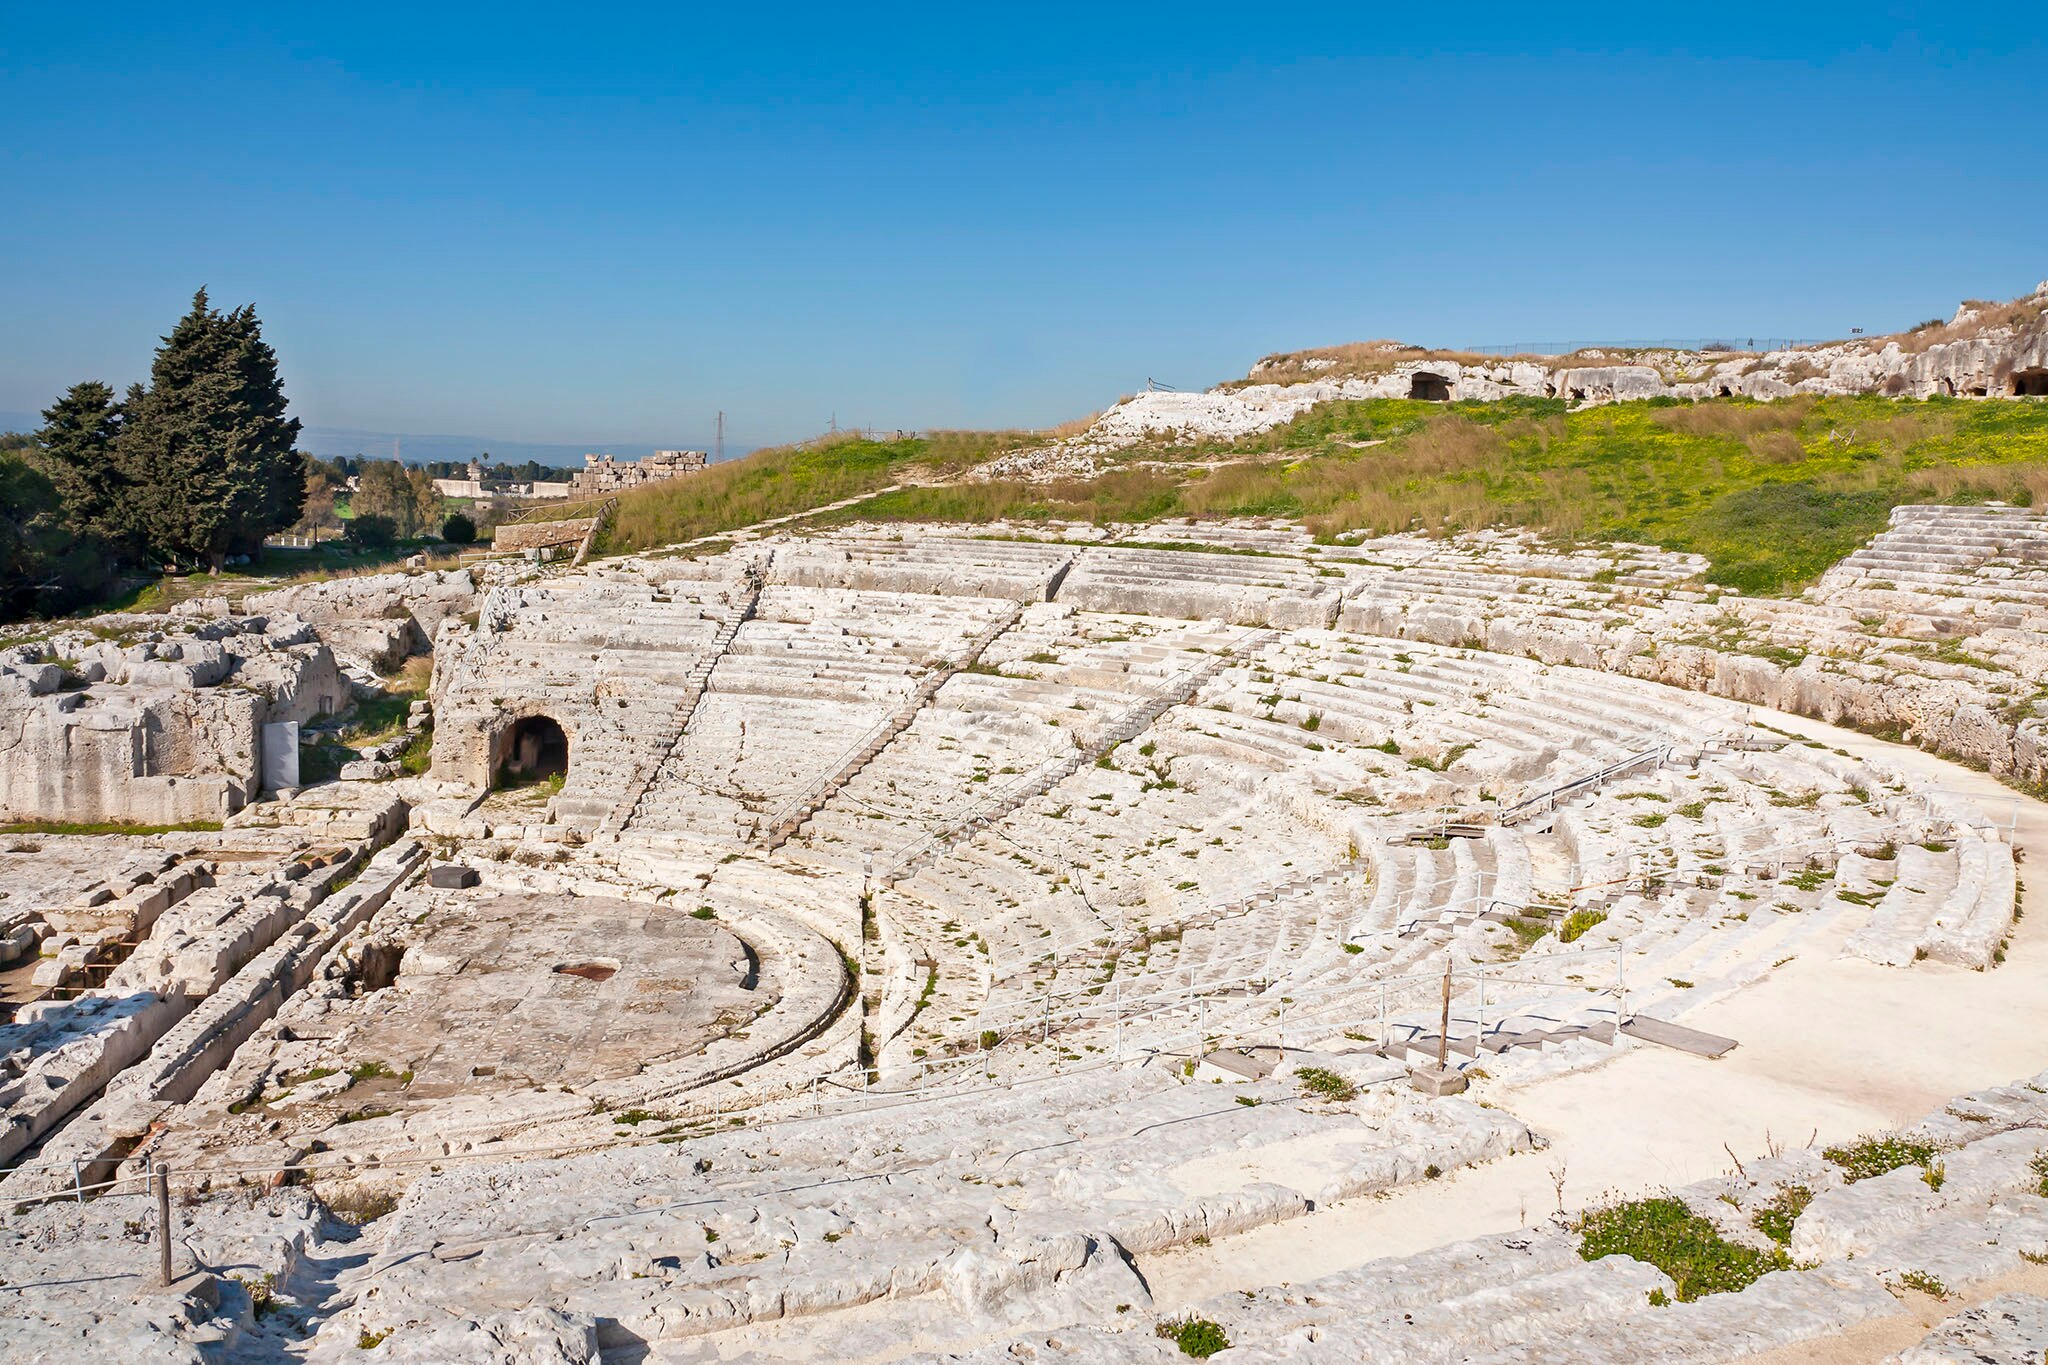 Ancient Greek theatre 